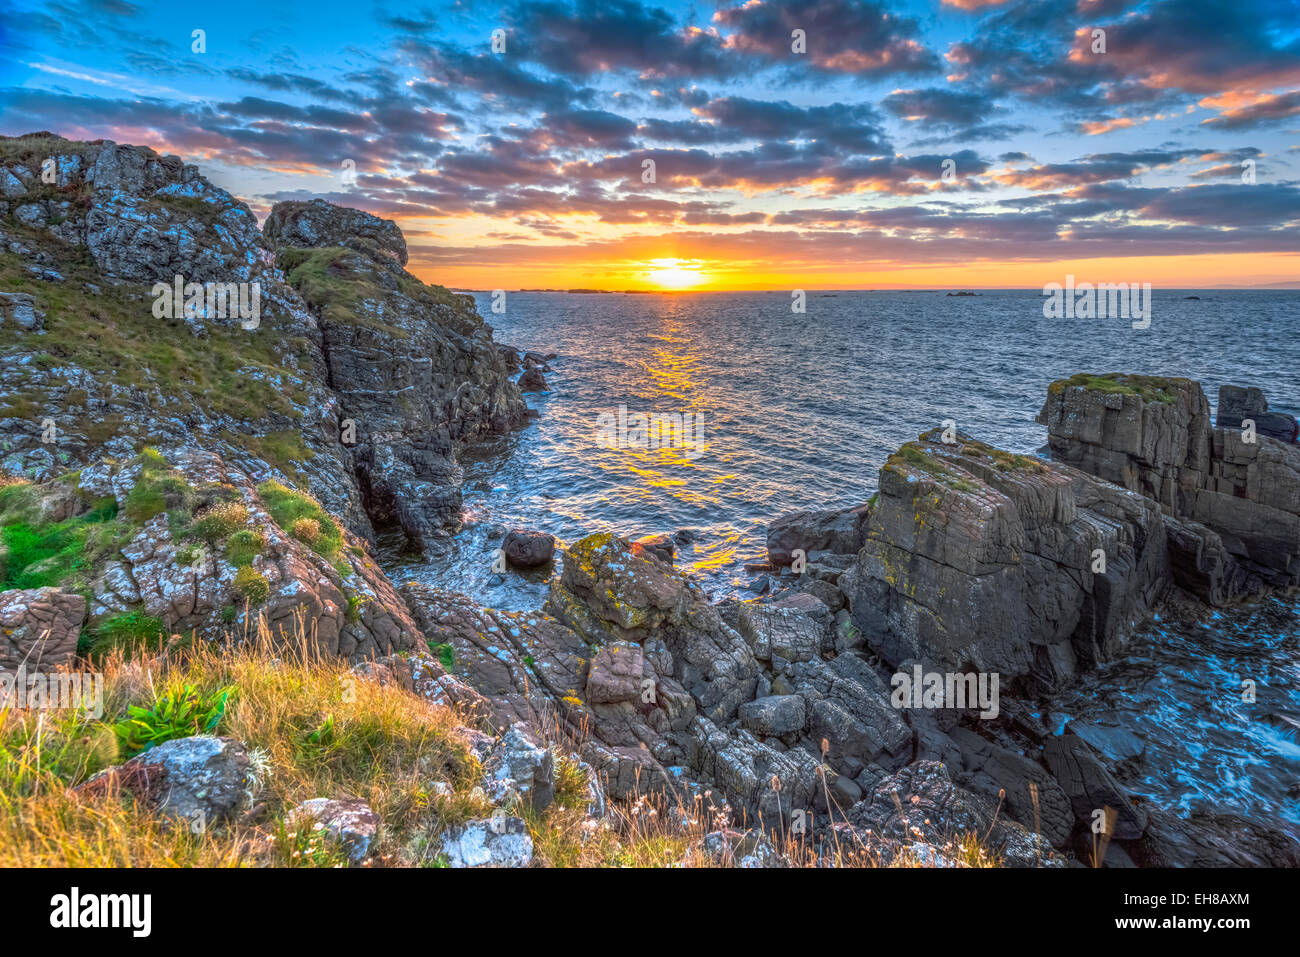 Lagavulin Bay en Sunrise, Islay, Argyll and Bute, en Escocia, Reino Unido, Europa Foto de stock